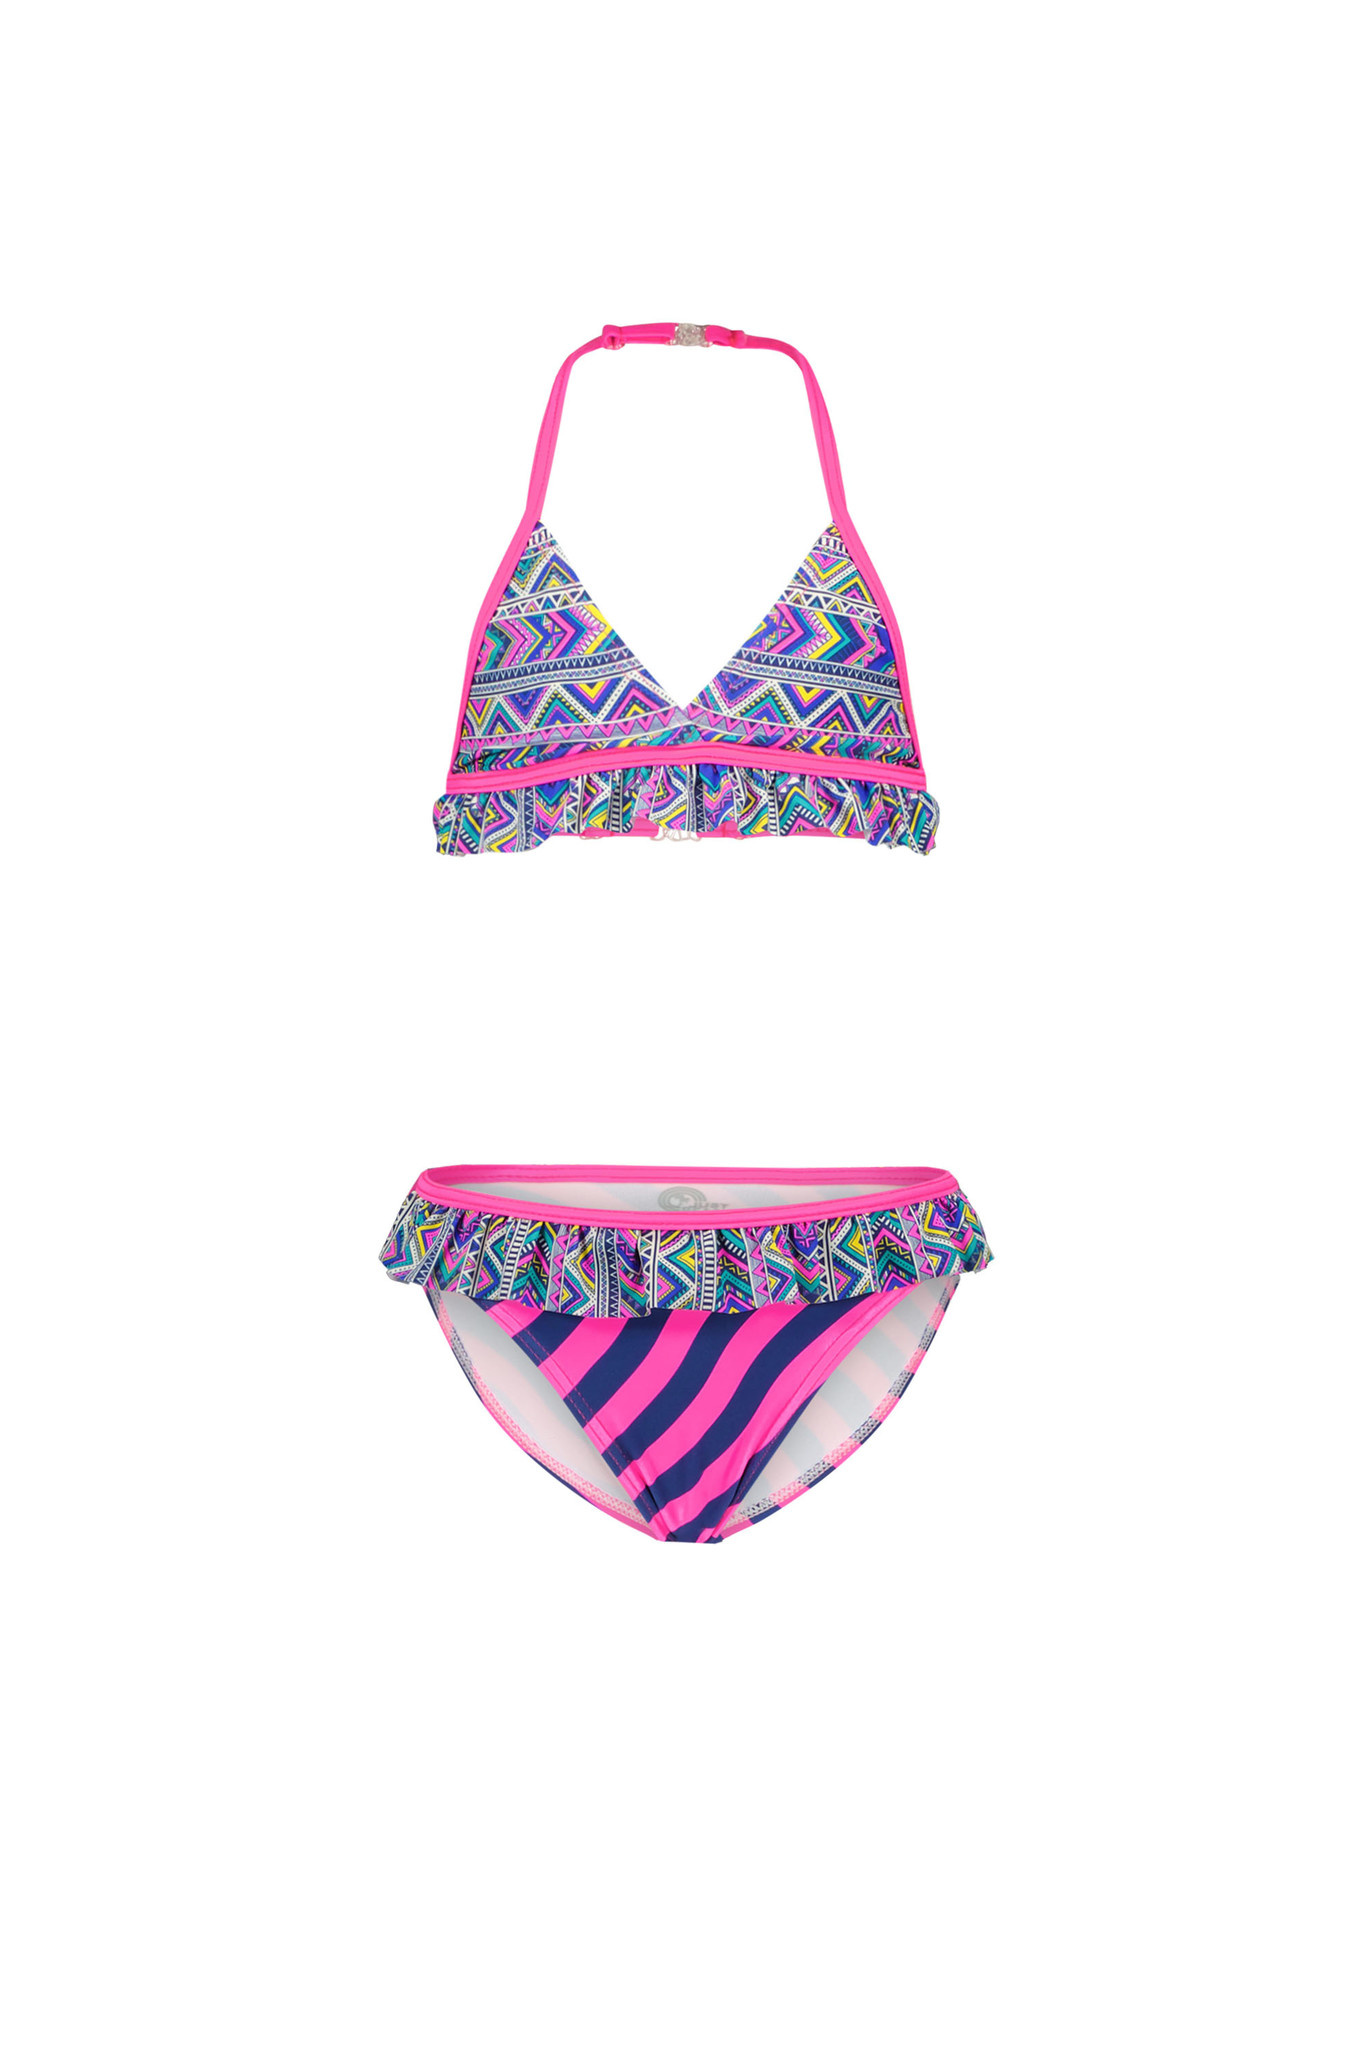 Berucht Additief Pellen Just Beach - Meisjes bikini triangel - Tropic aztek - merkmeisjeskleding.nl